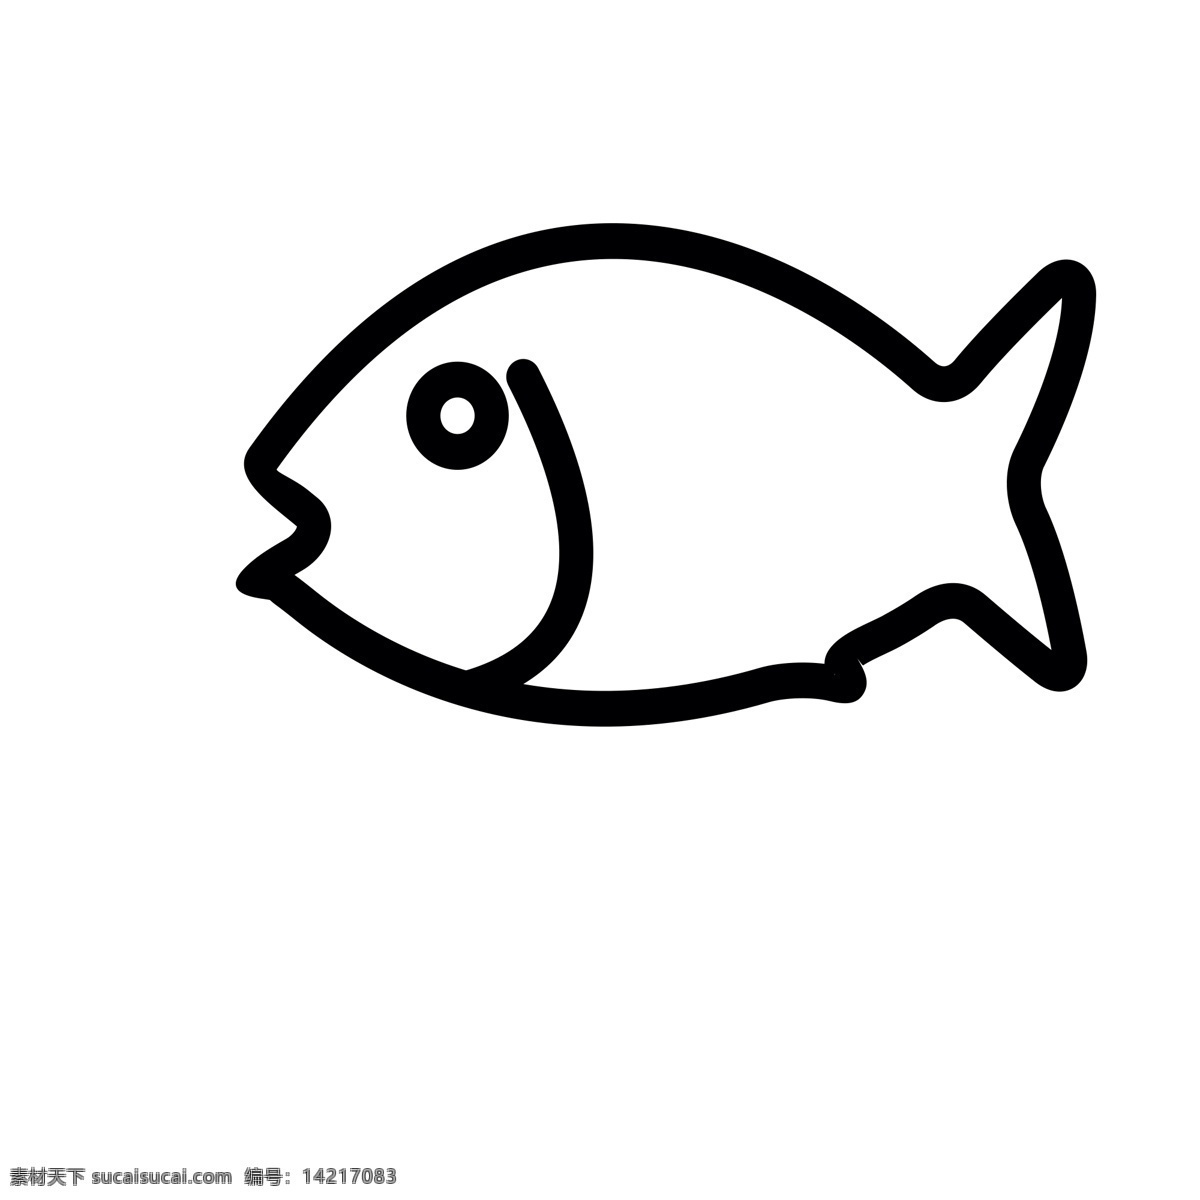 卡通 小鱼 咸鱼 鱼 食物 食材 扁平化ui ui图标 手机图标 游戏ui 界面ui 网页ui h5图标